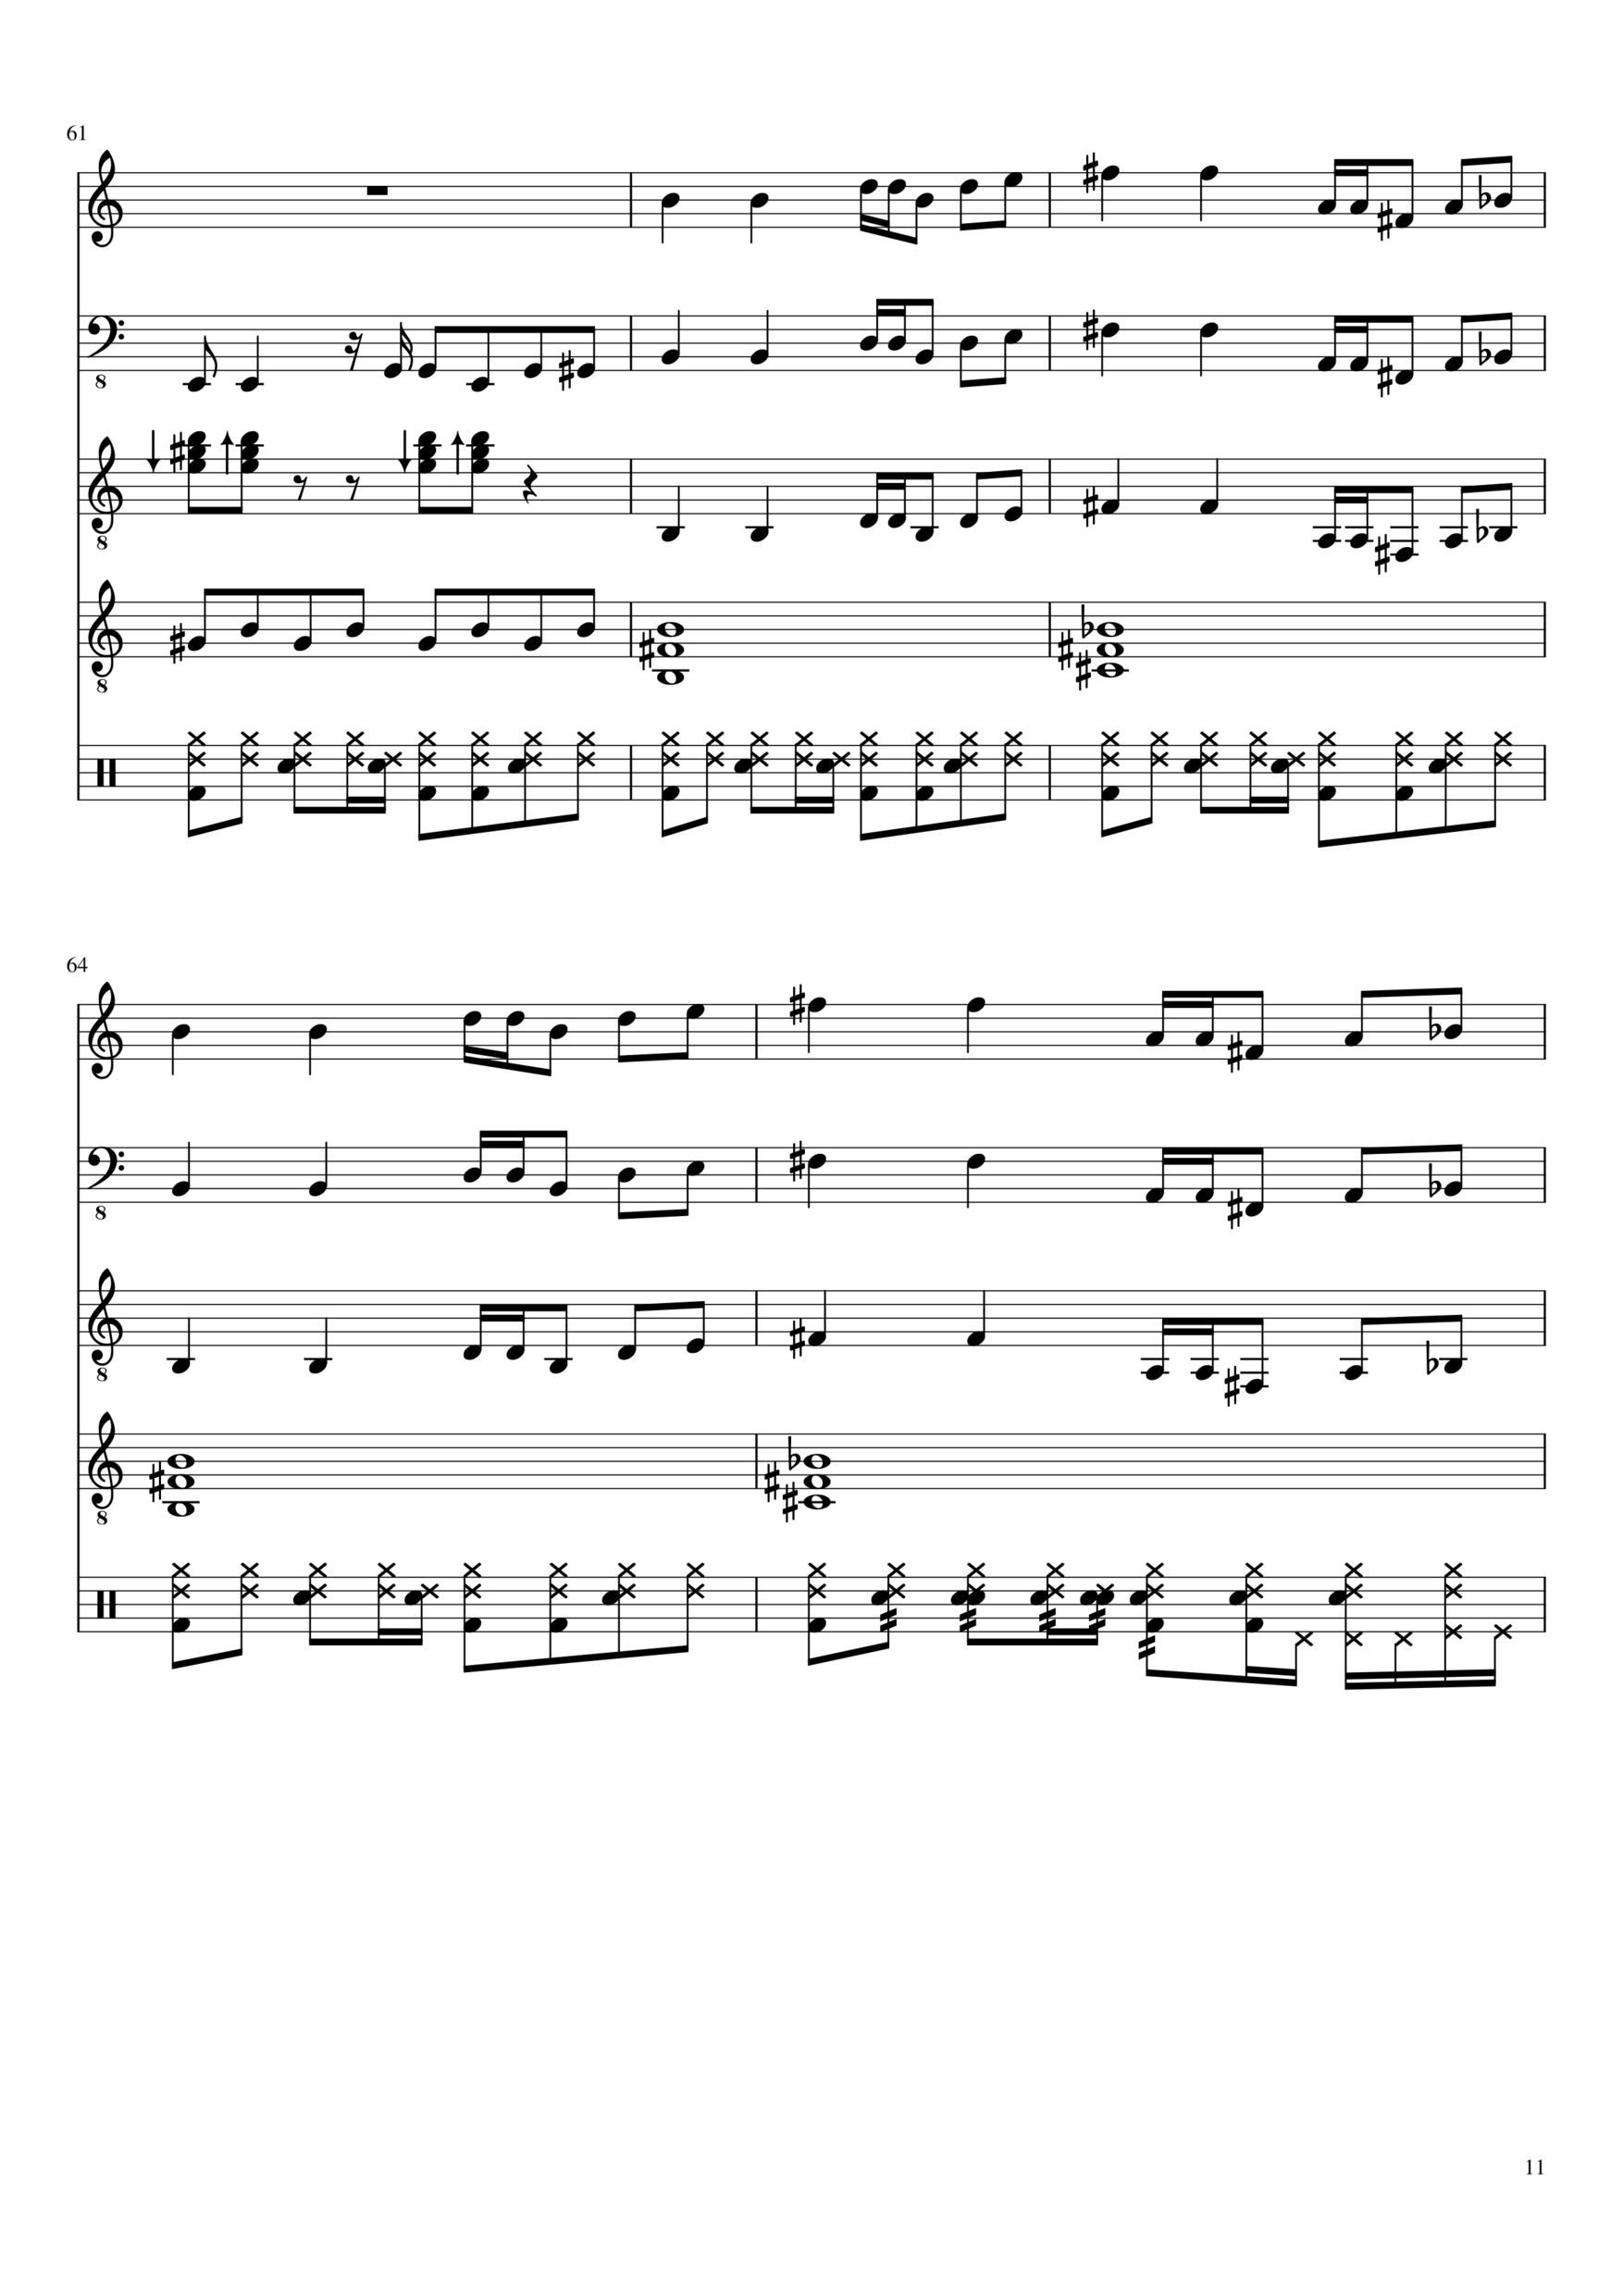 Vechnaya lyubov slide, Image 11